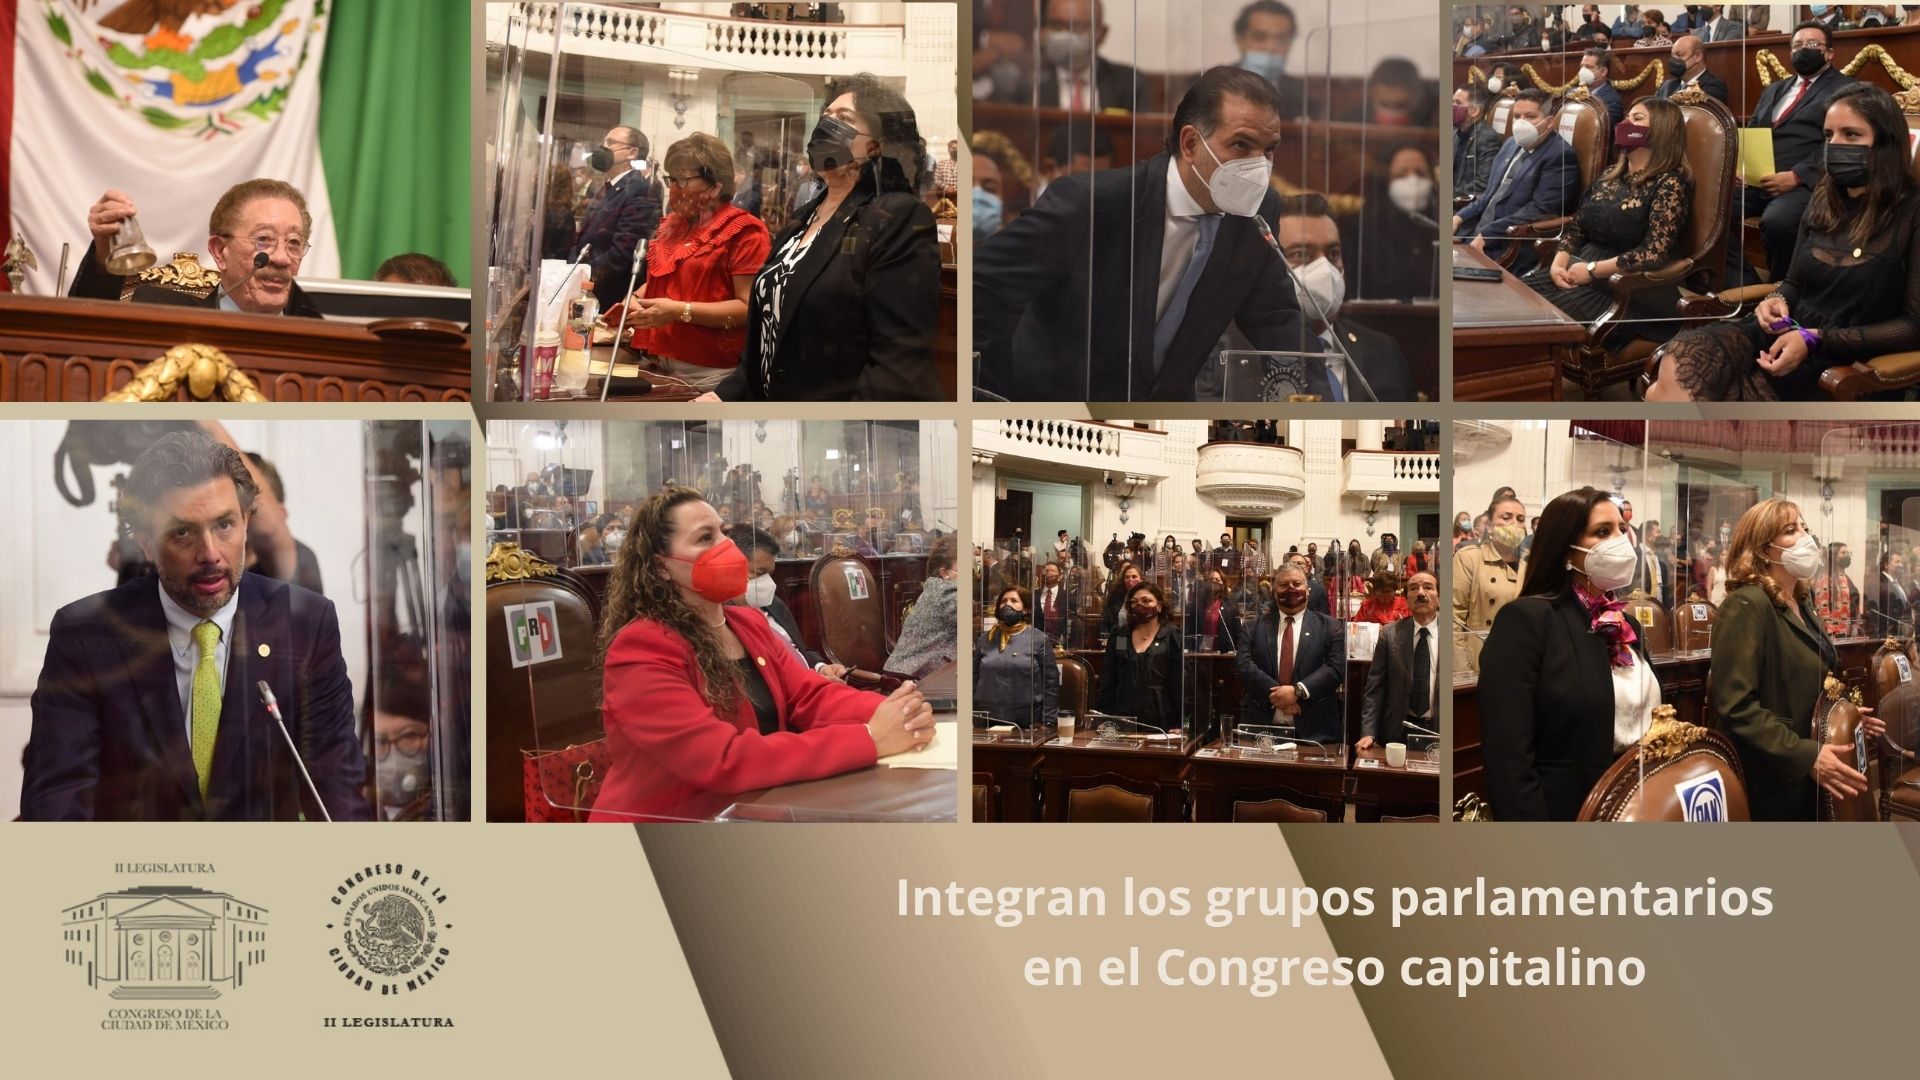 Integran los grupos parlamentarios en el Congreso capitalino